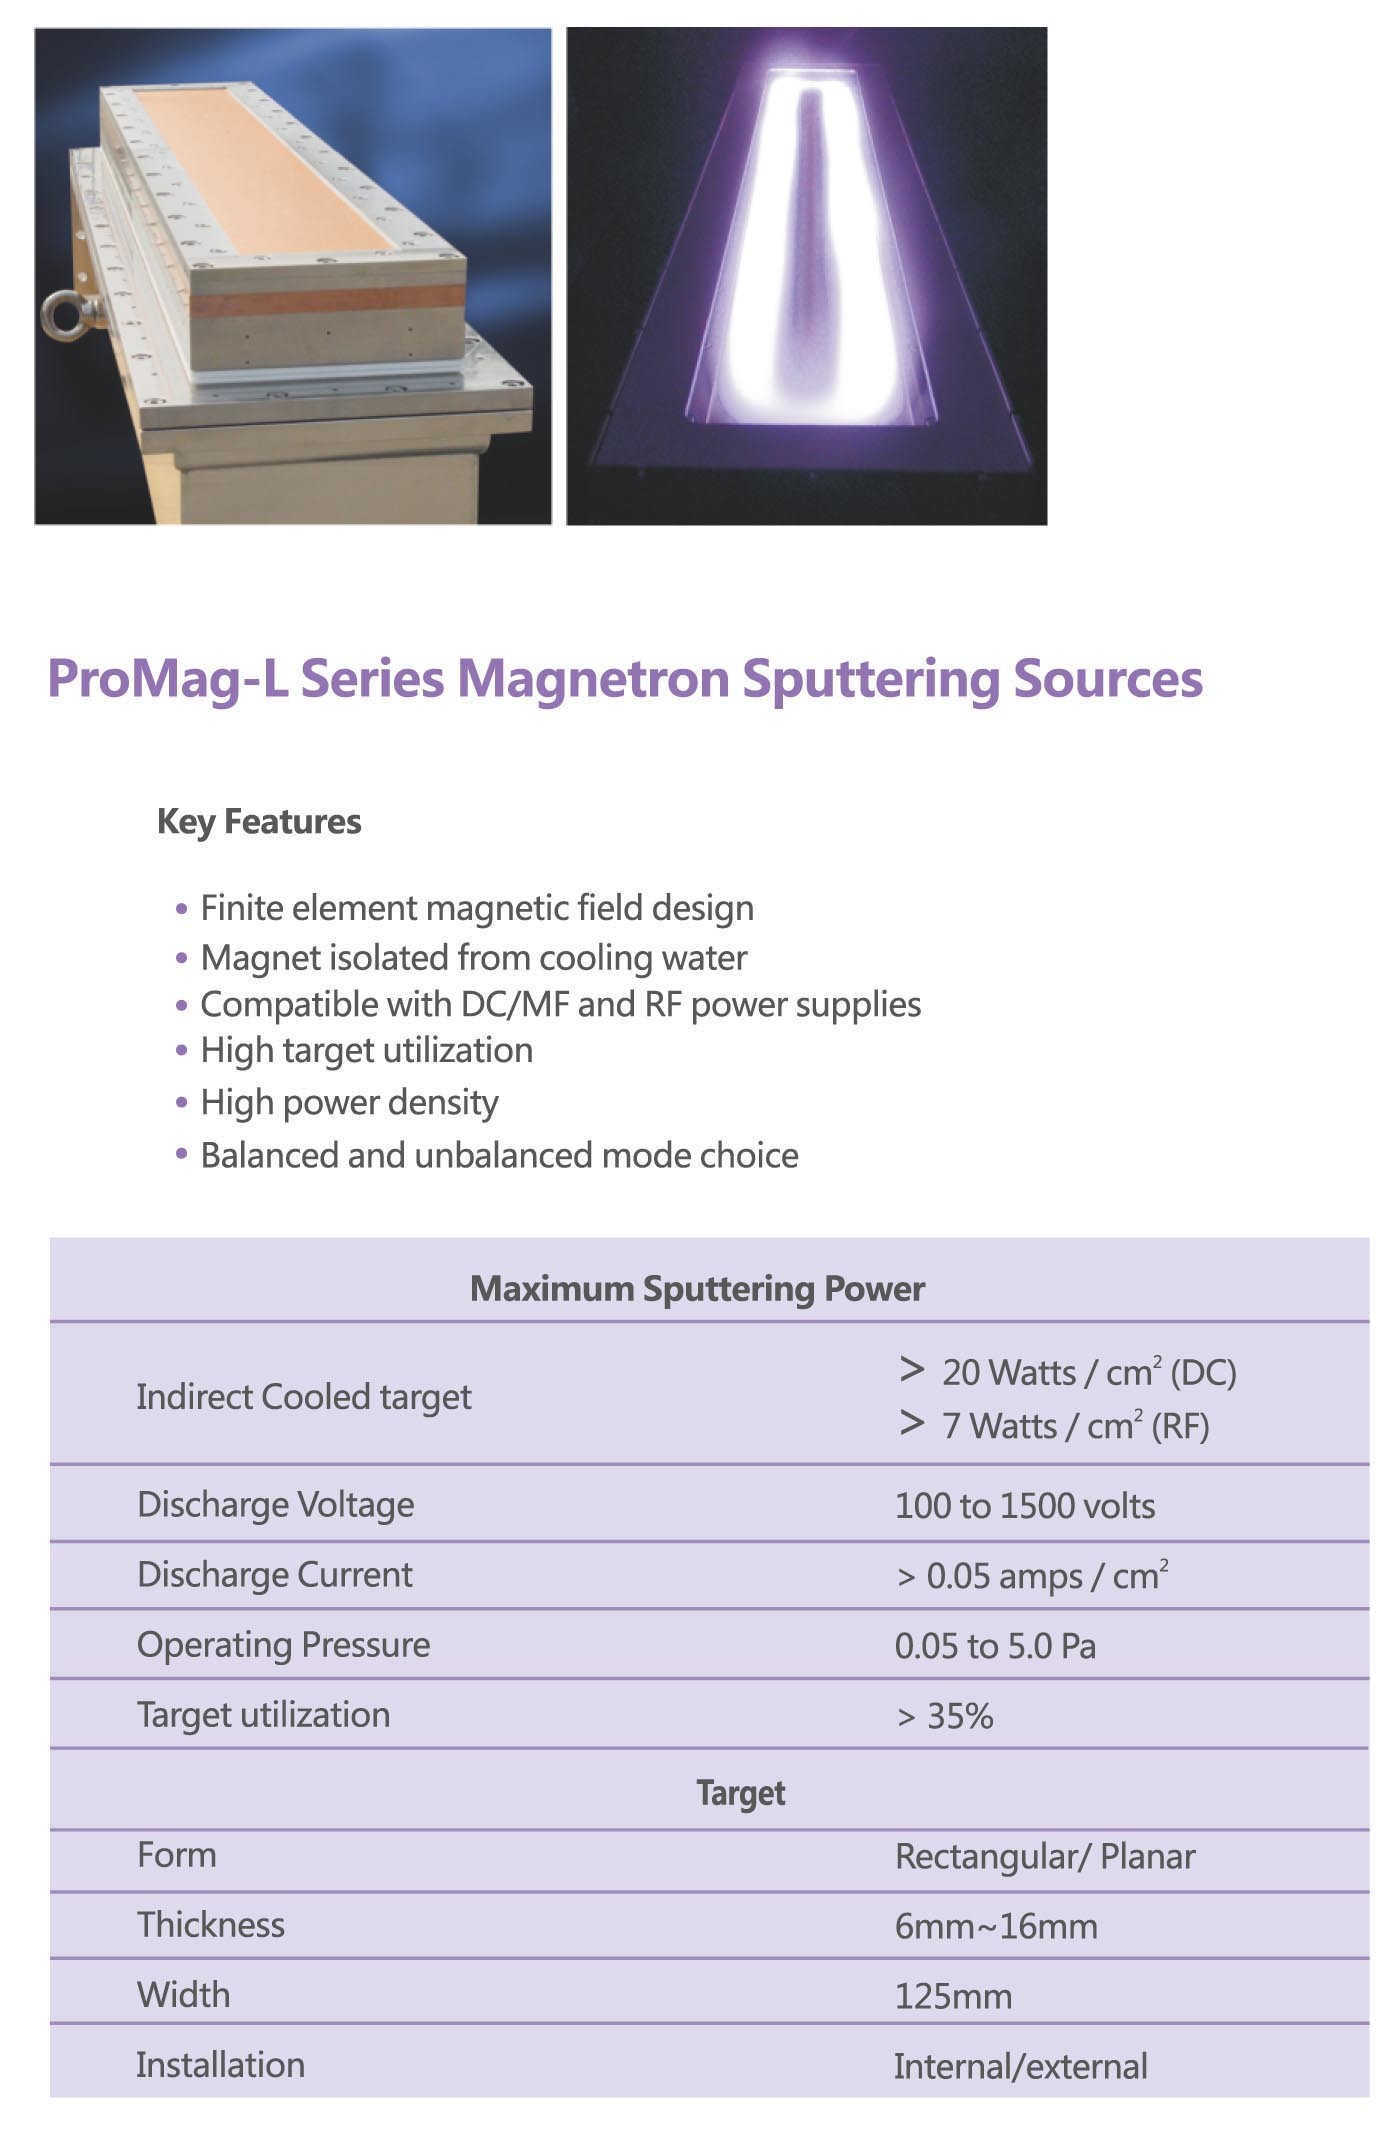 Magnetron Sputtering Sources, Planar Sputtering Cathodes, High utilization target.